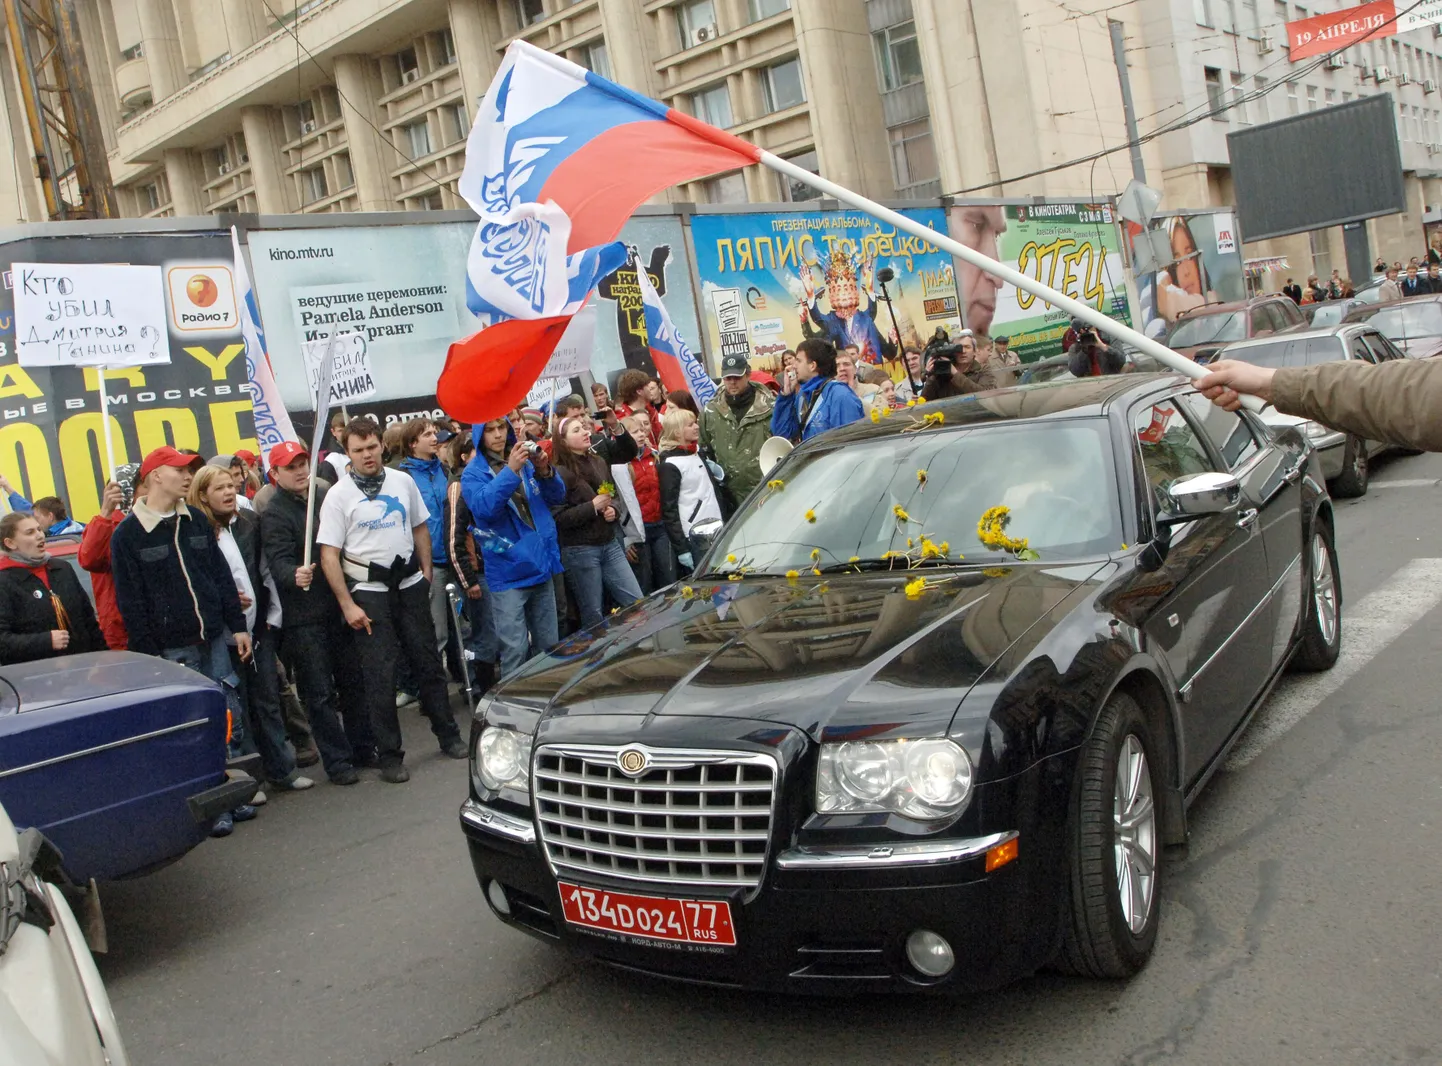 Eesti suursaadiku Marina Kaljuranna auto piiramisrõngas 2. mail 2007 Moskvas Eesti saatkonna lähistel.